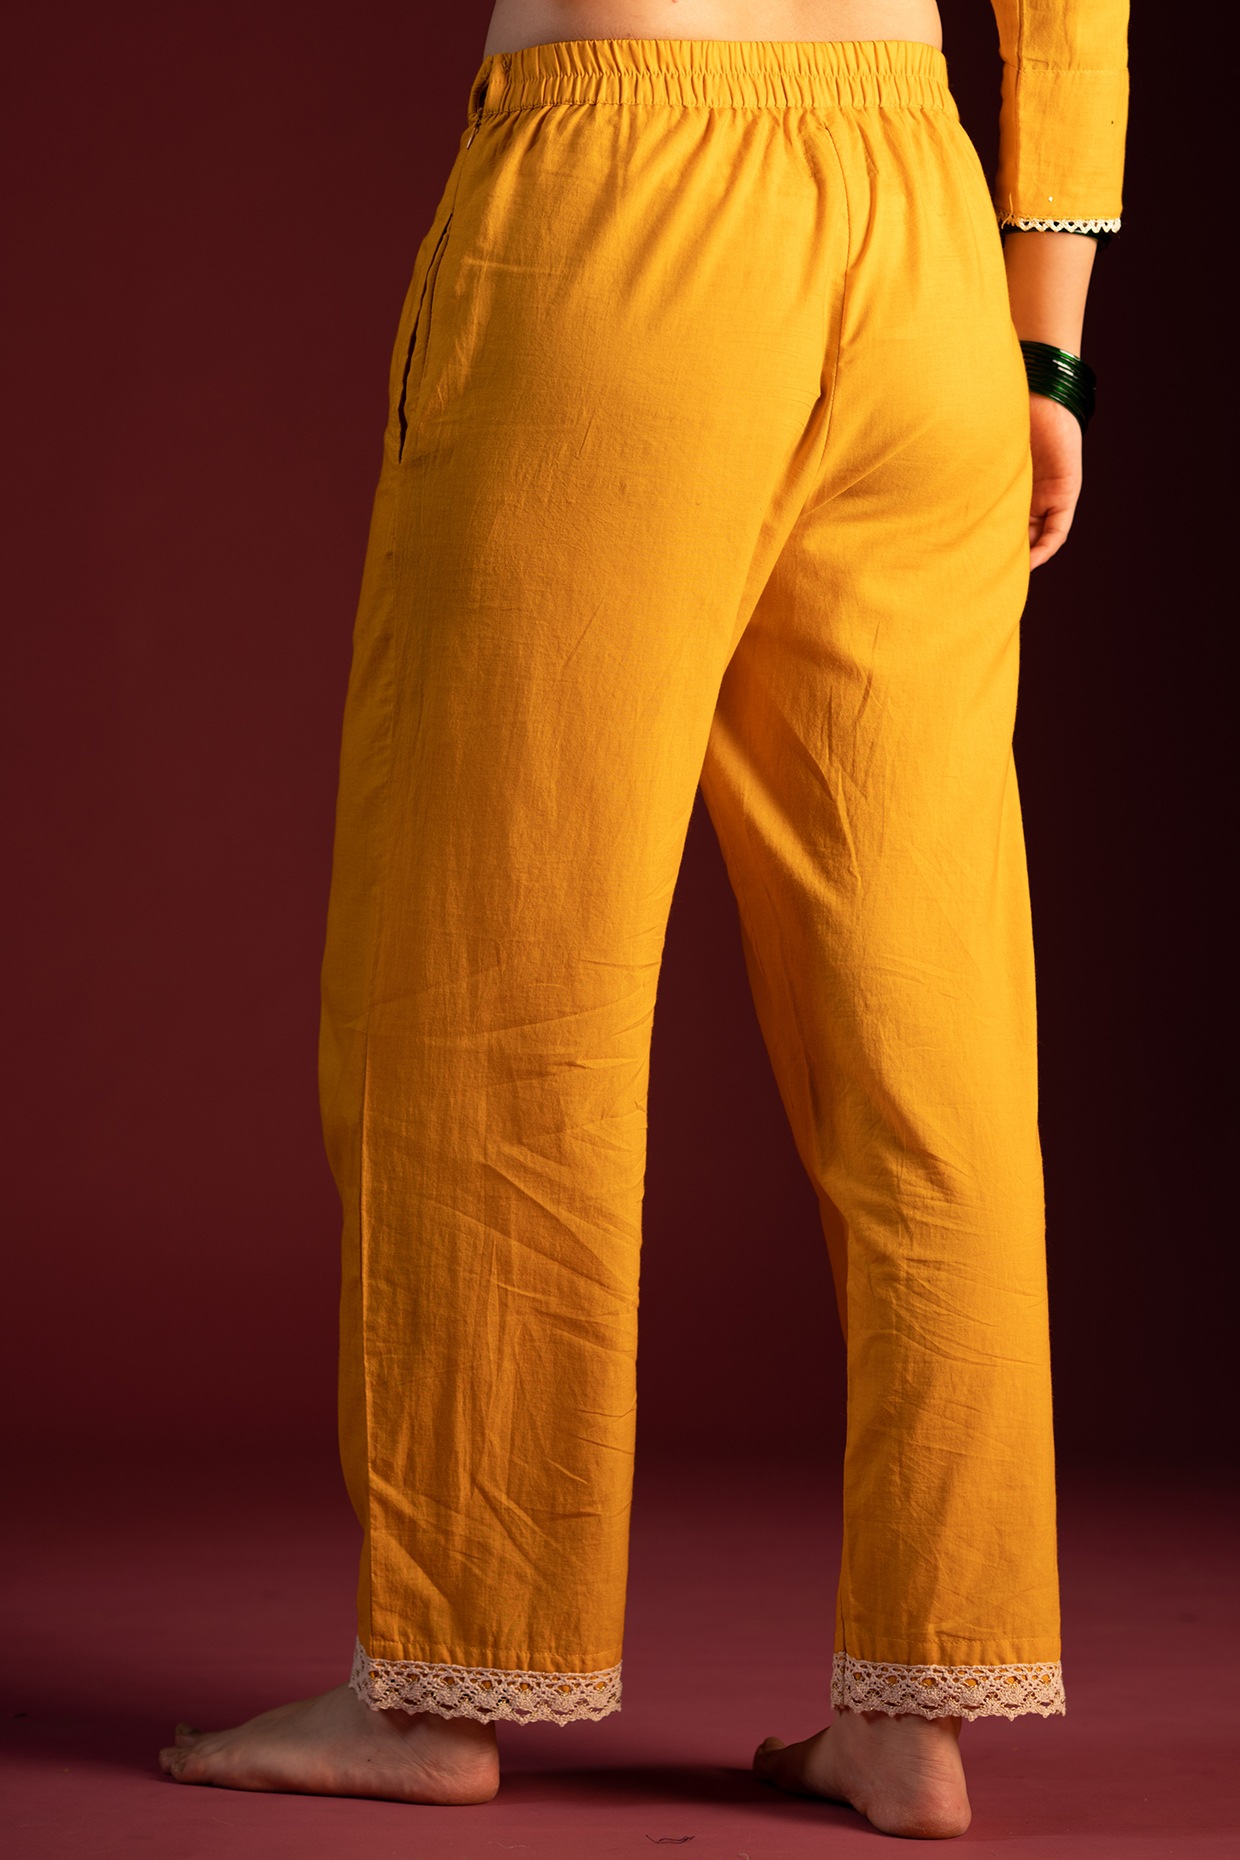 Black Plain Color Indian Churidar Pants 100% Cotton-Tights Kurti Salwar  Kameez | eBay